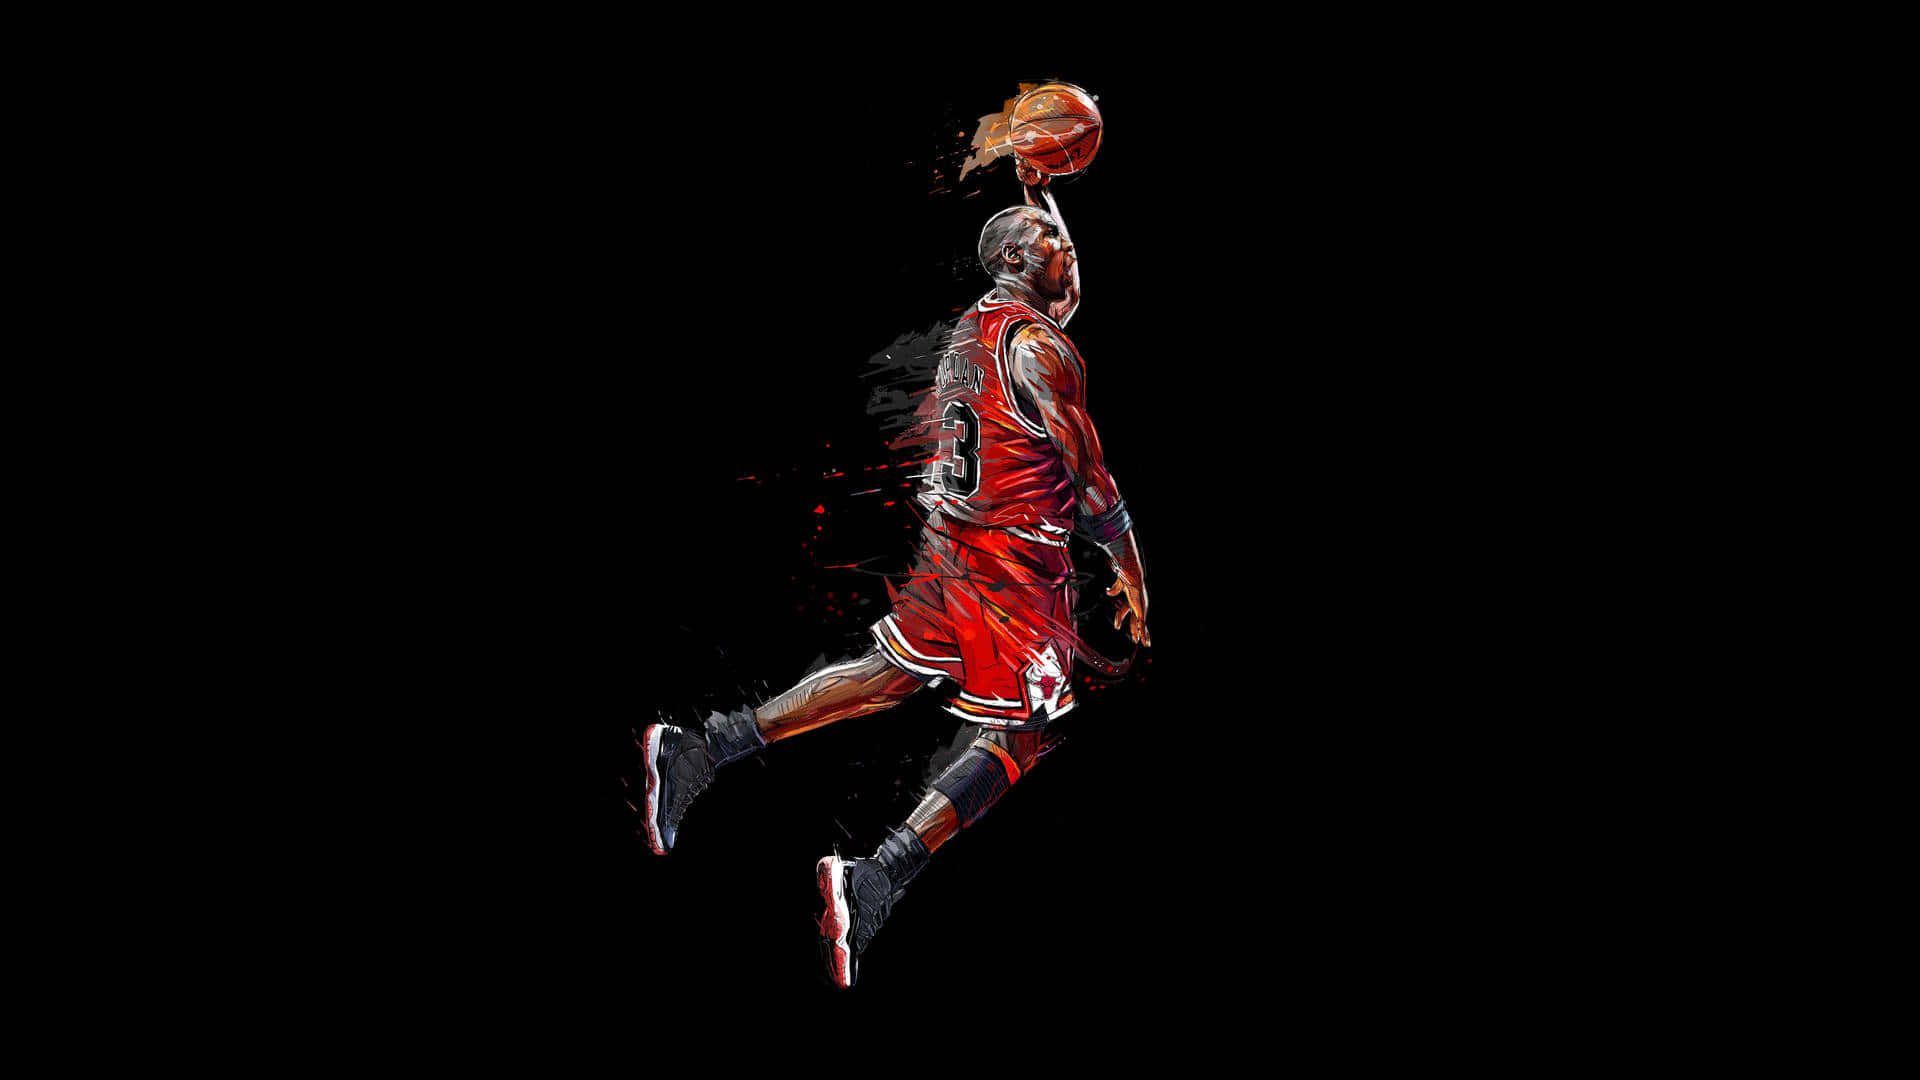 Michael Jordan's Black Basketball Aesthetic Dunking